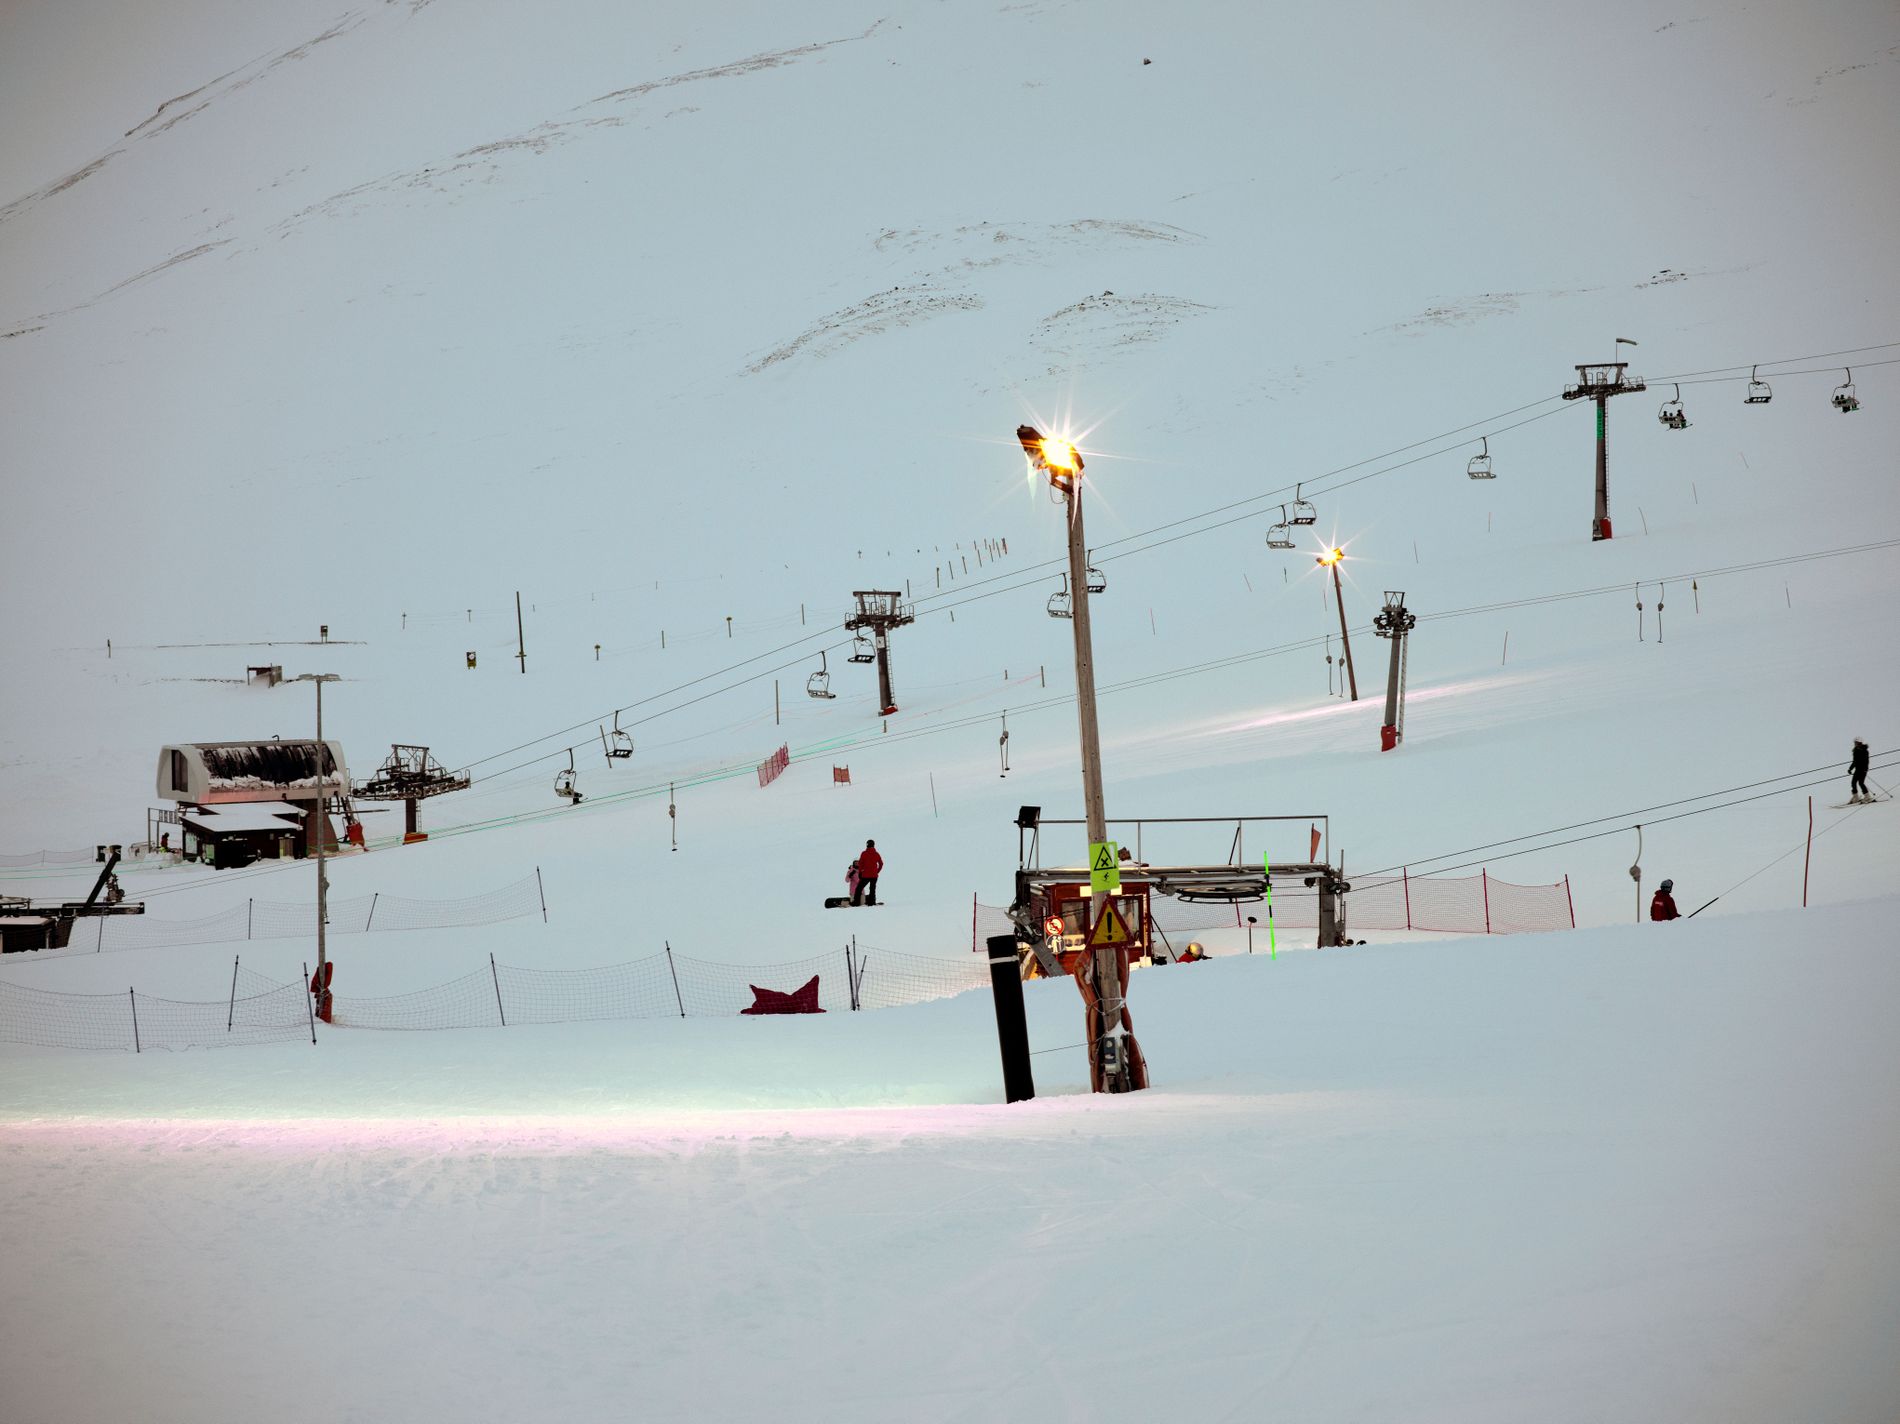 Ski Iceland